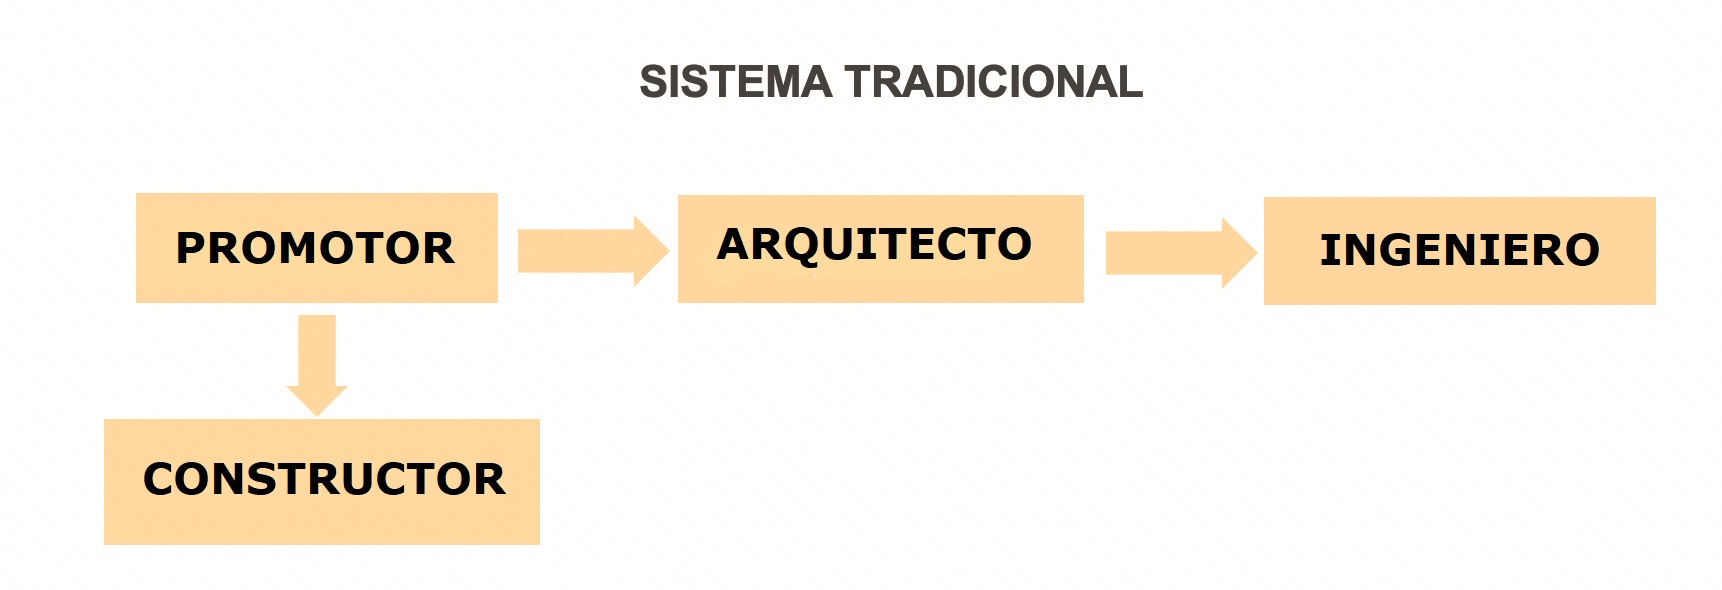 SISTEMA TRADICIONAL ESTRUCTURAS CONSTRUCCION